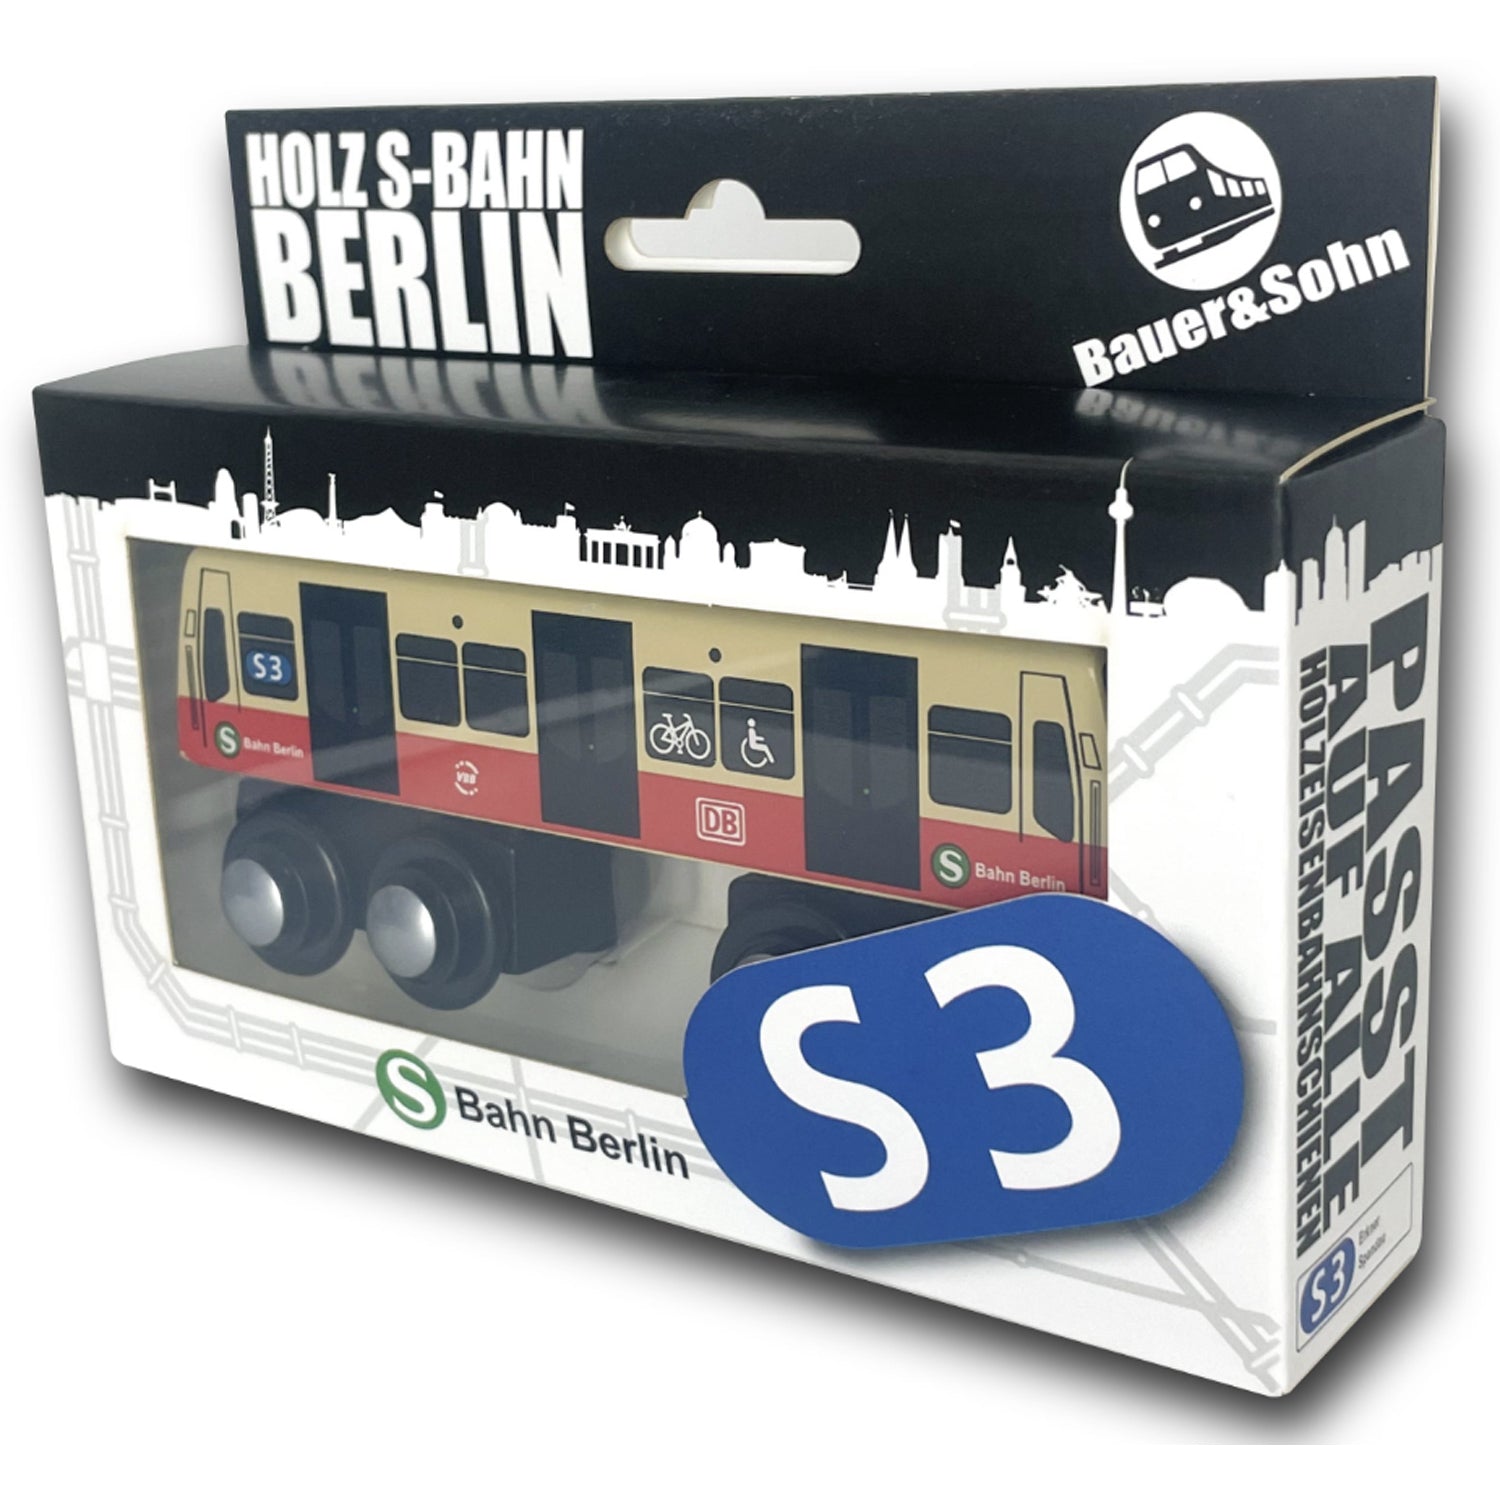 Miniatur Holz S-Bahn Berlin S3 zum Spielen